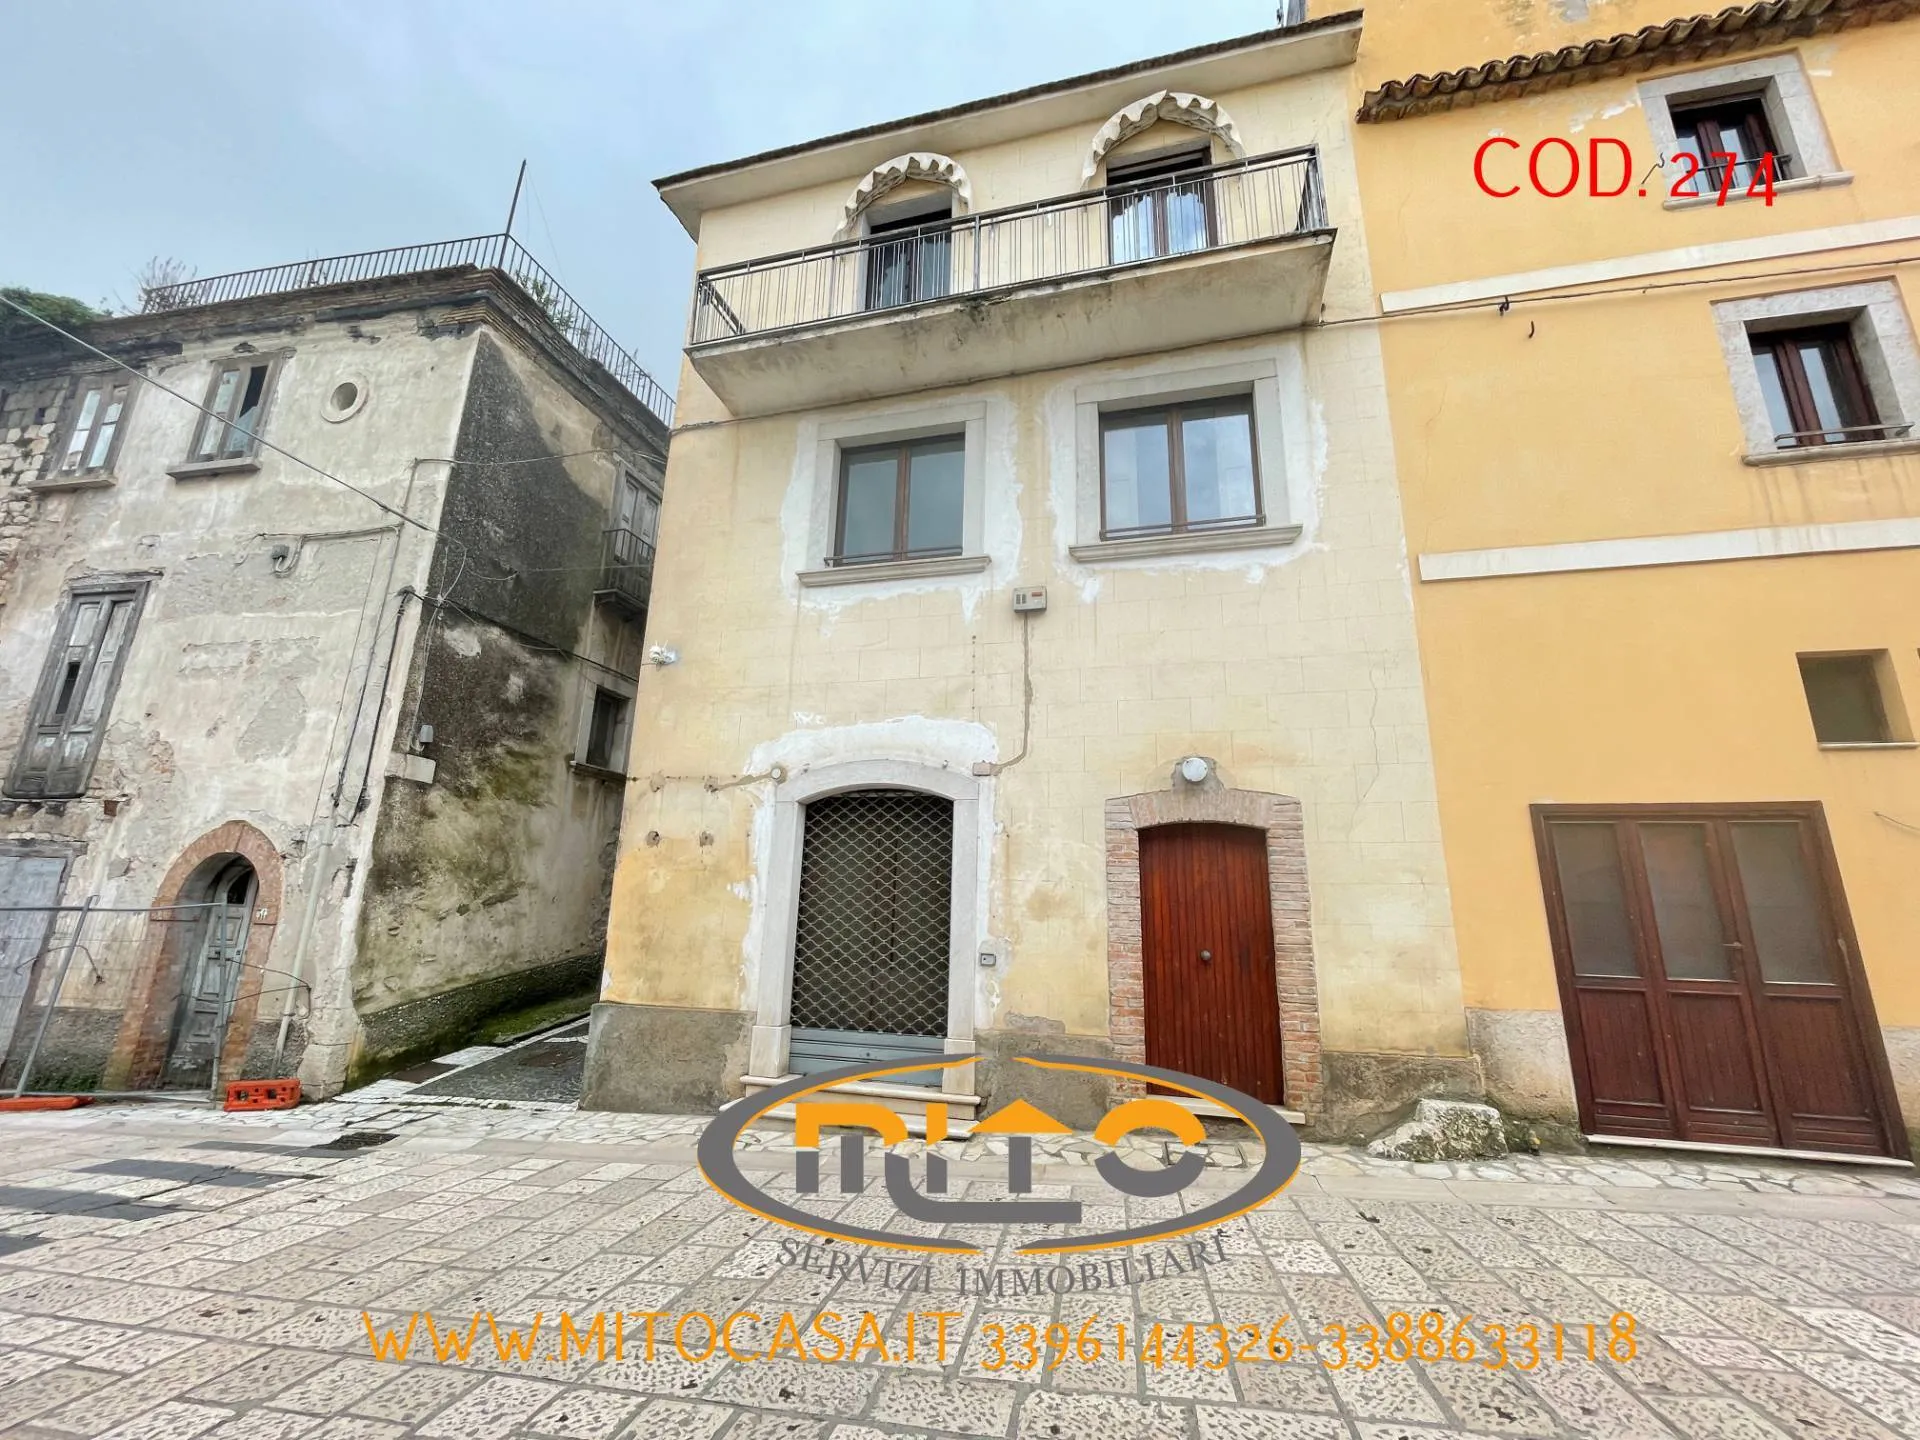 Immagine per Casa indipendente in vendita a Telese Terme casalduni via p.guglielmucci